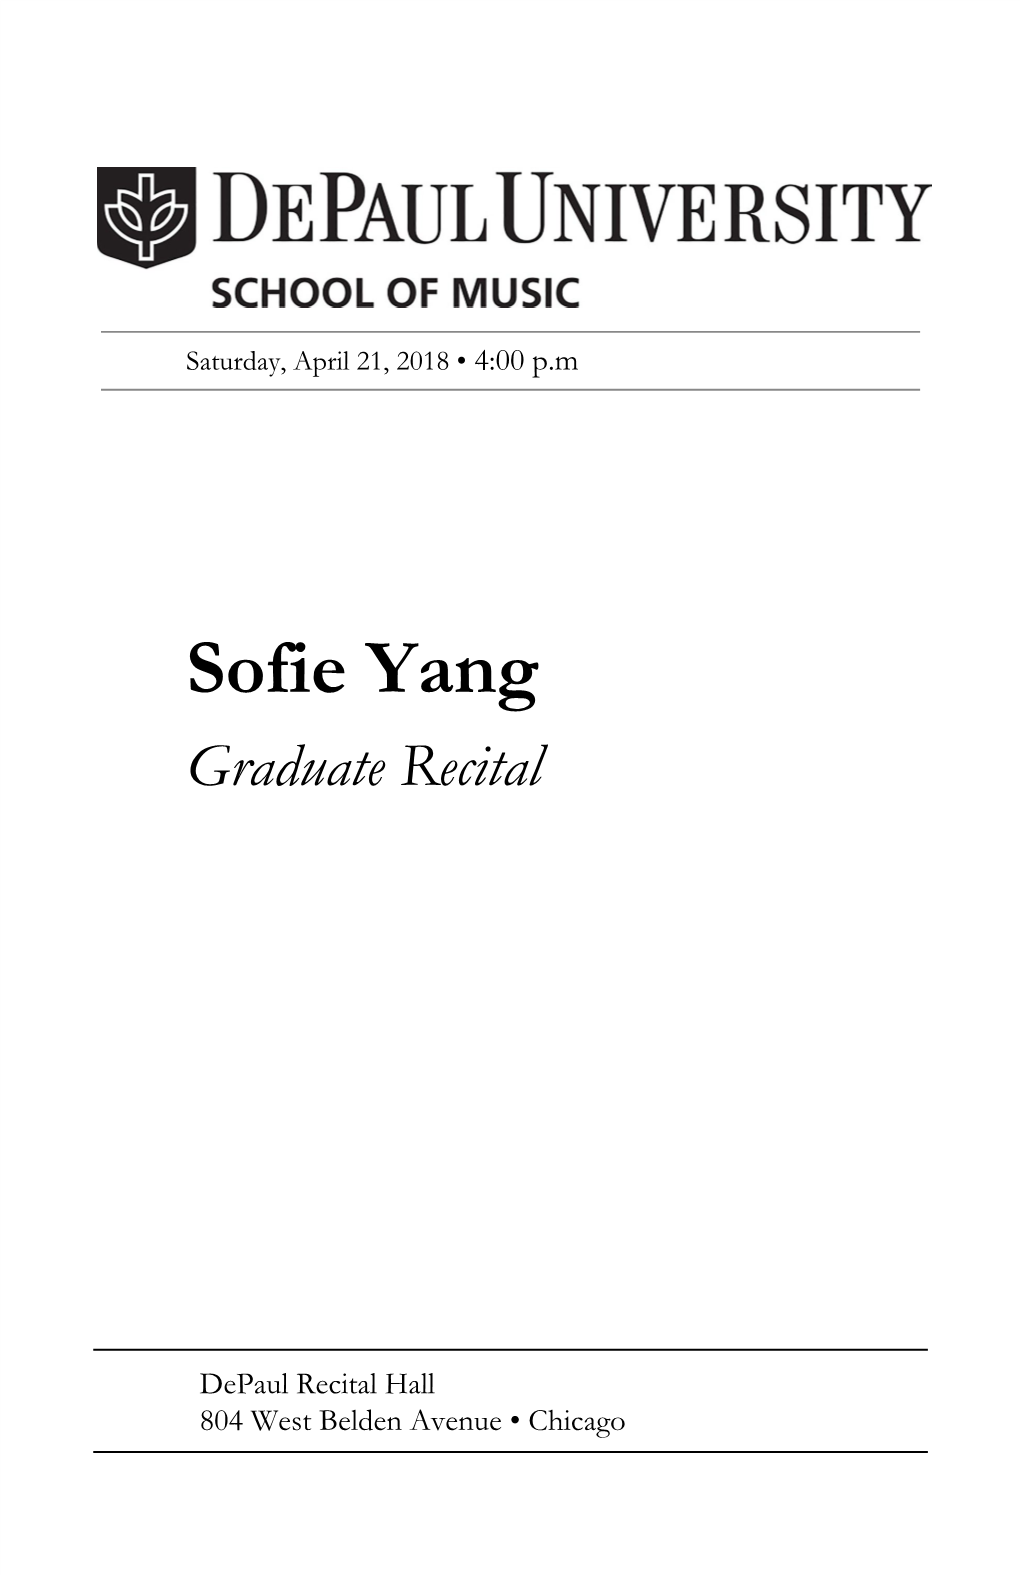 Sofie Yang, Violin Graduate Recital Juan Sebastian Avendaño Fonseca, Piano